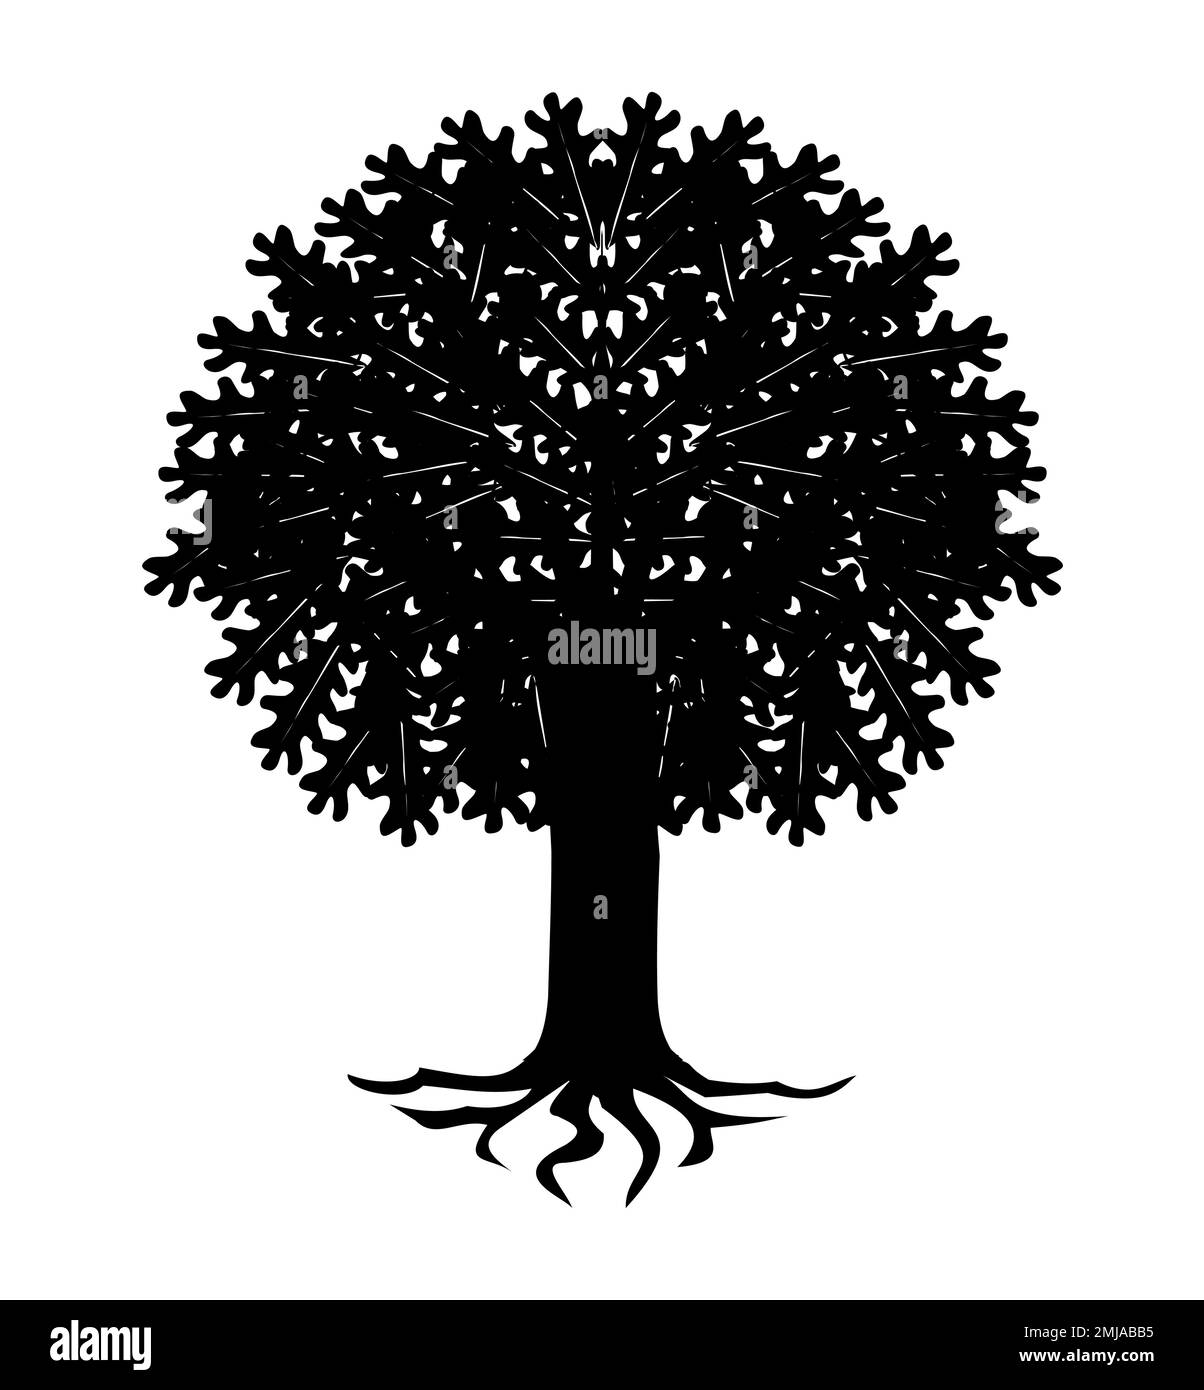 Schwarze Silhouette eines auf weißem Hintergrund isolierten Baumes, banyan, für Logo, Symbol, Poster, Oder drucken Stock Vektor